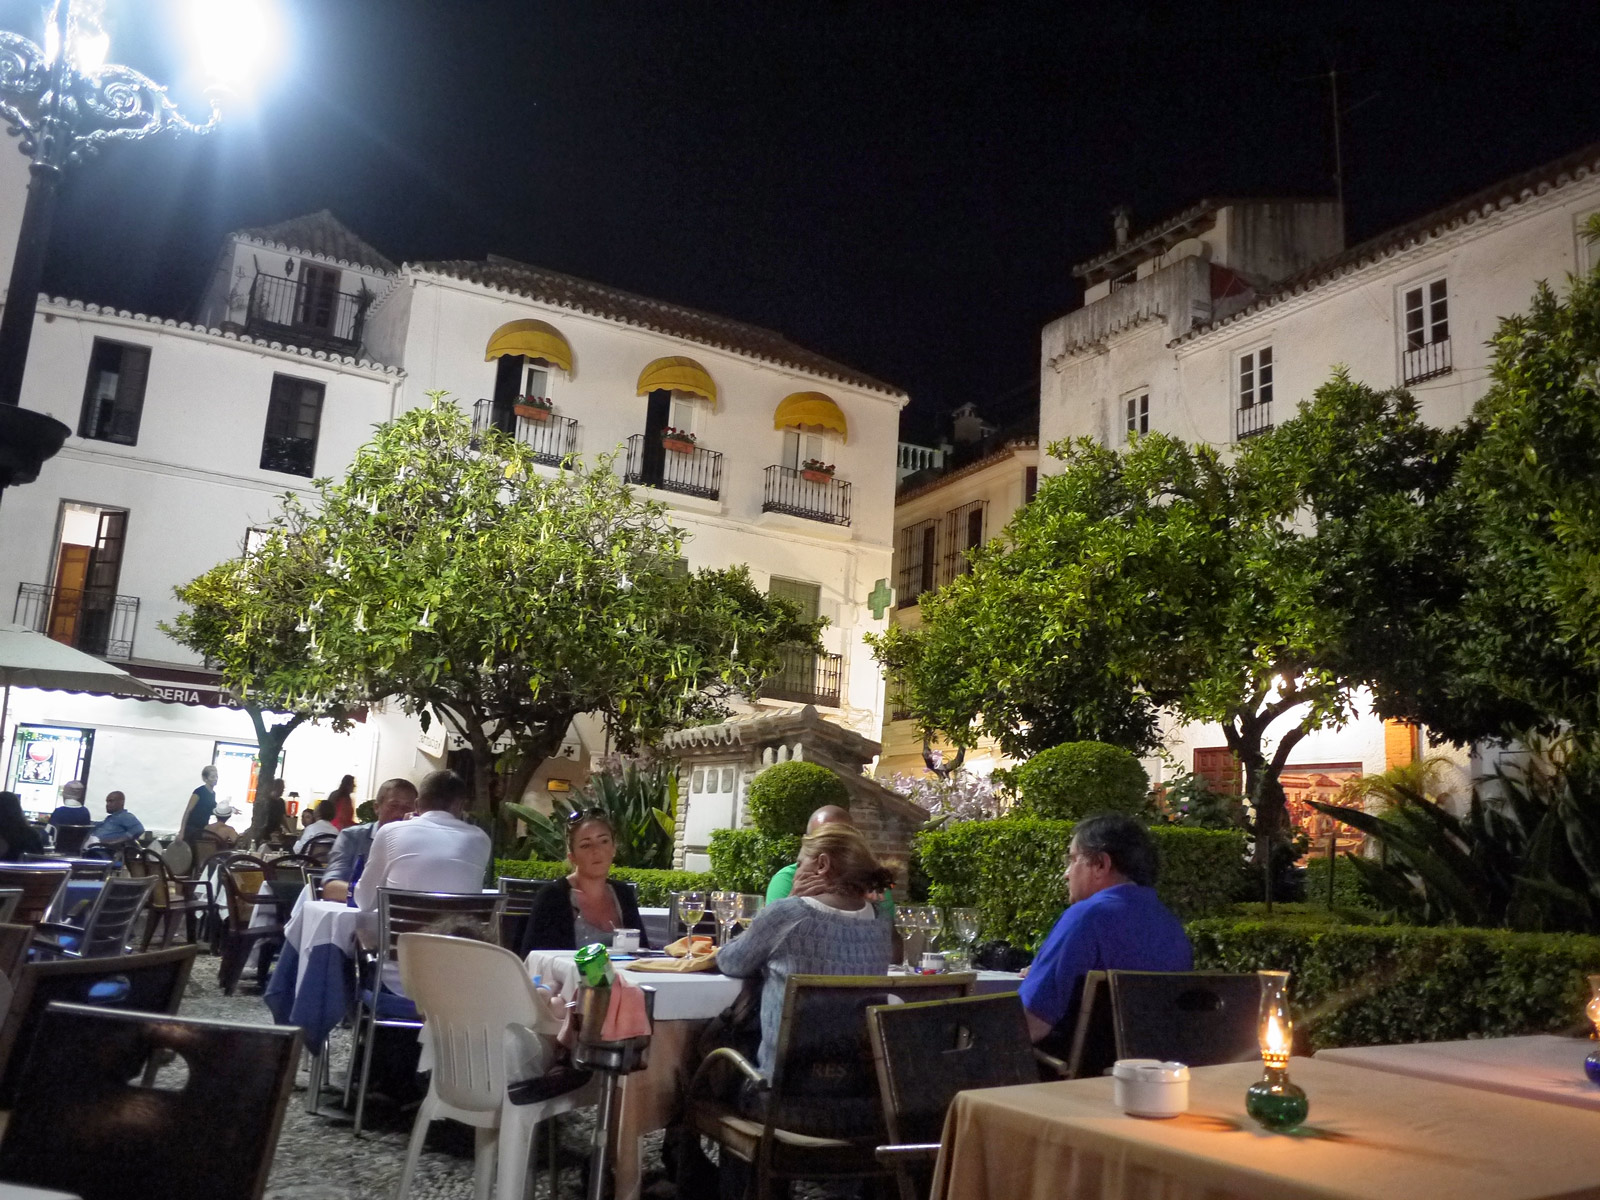 Dinner Under the Stars in Orange Square - Marbella, Spain